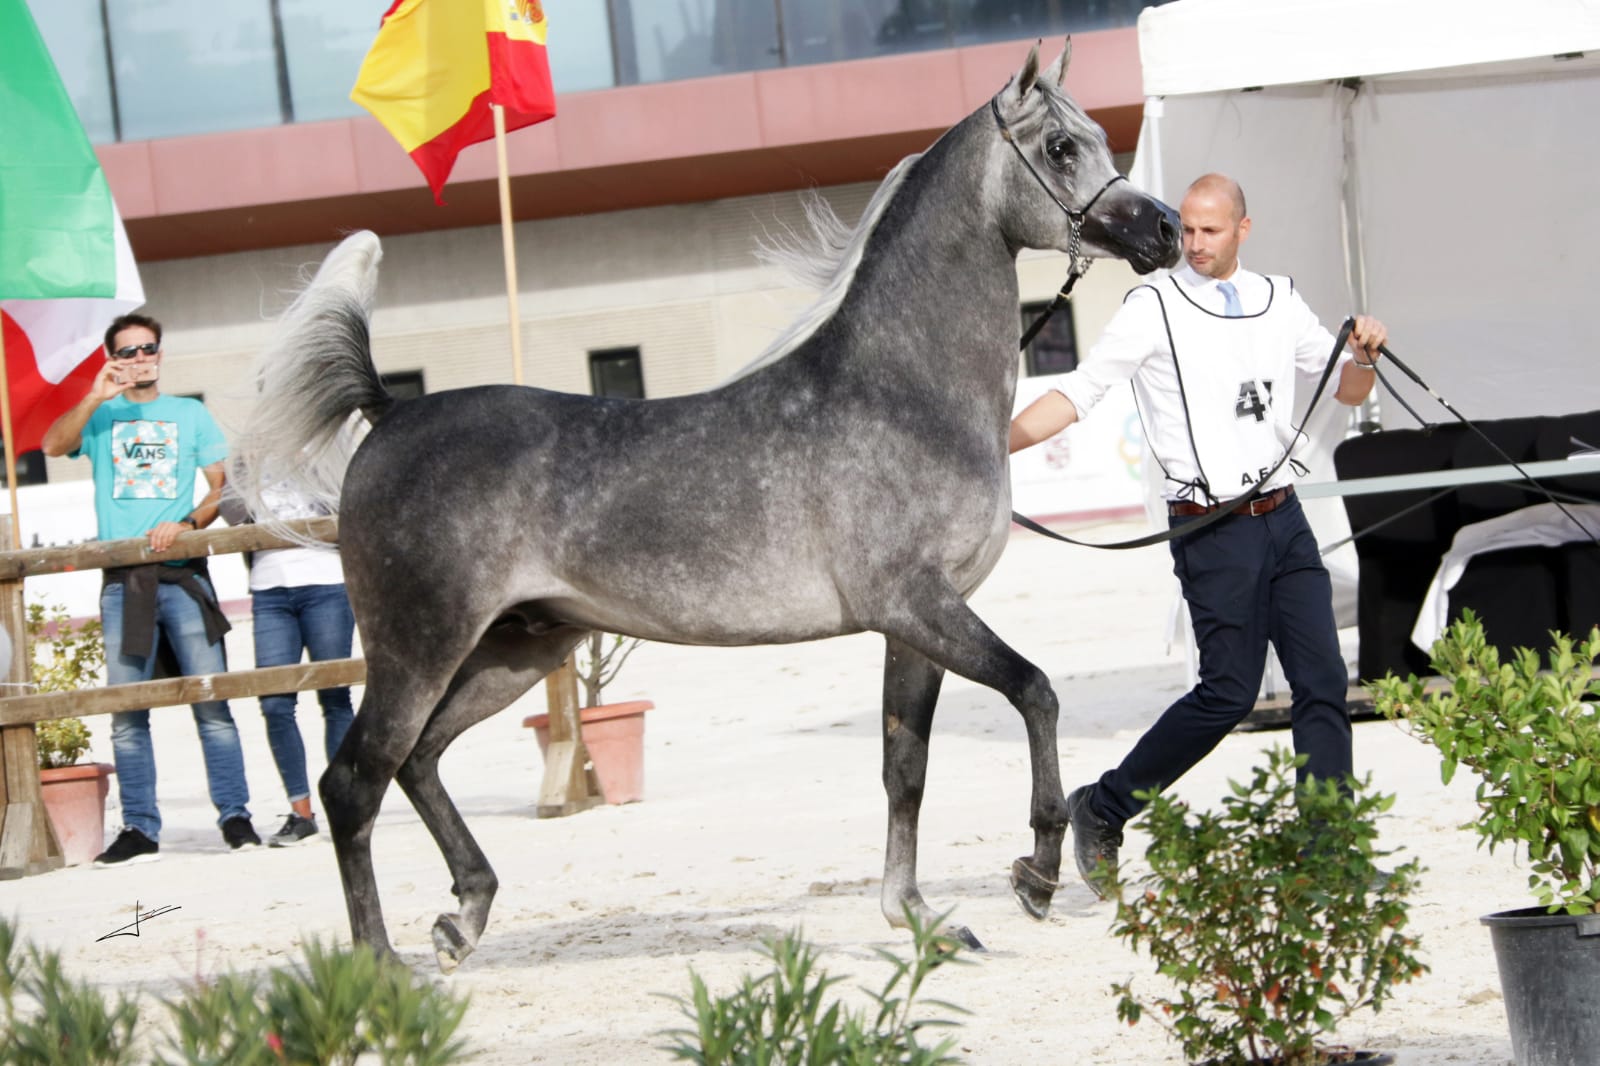 caballo árabe campeon españa sementales 2018 izan al cape